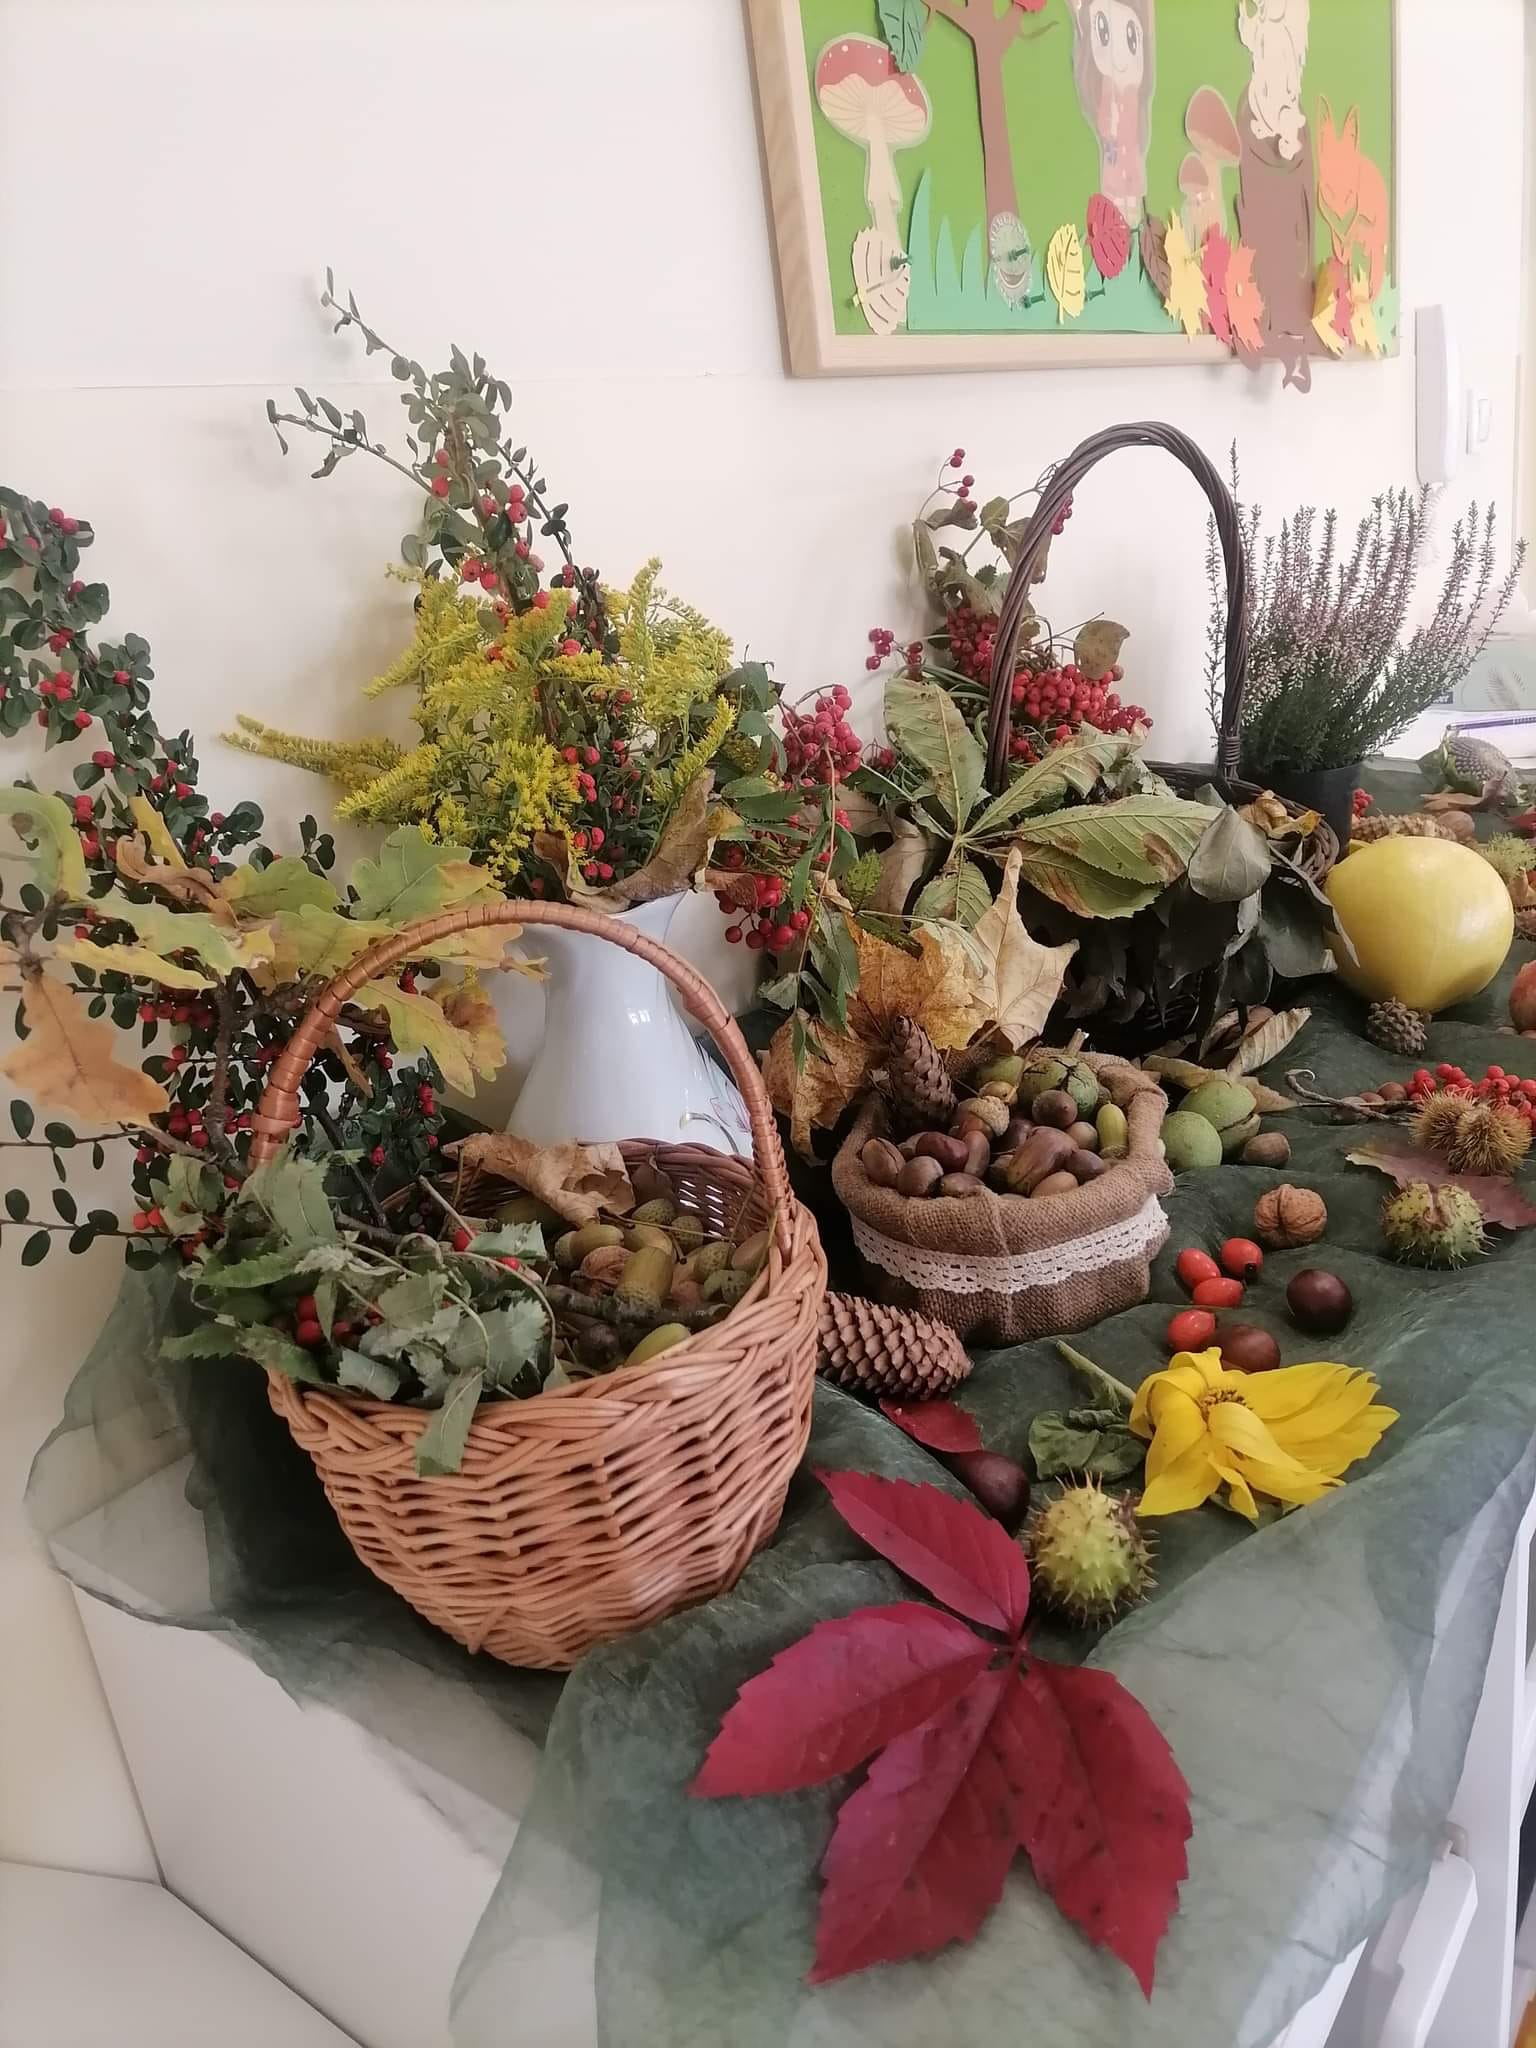 ułożone dary jesieni